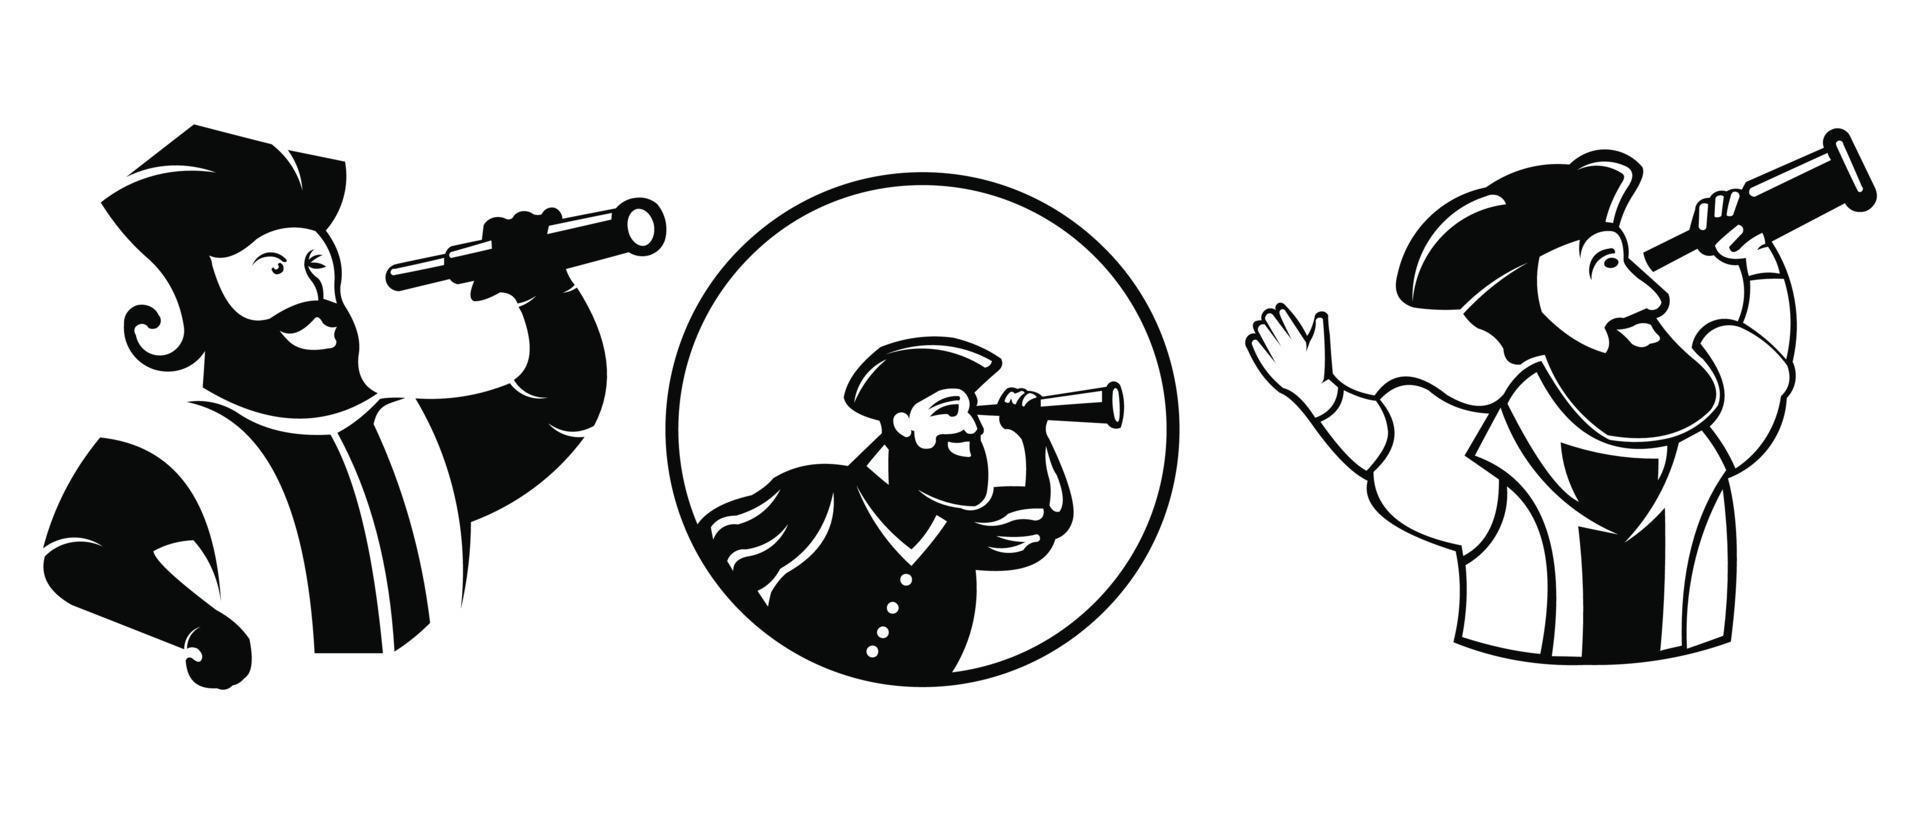 vector piraat pictogram. eenvoudige platte piratenillustratie voor embleem, logo, avatar, enz. verrekijker telescoop lenspictogram